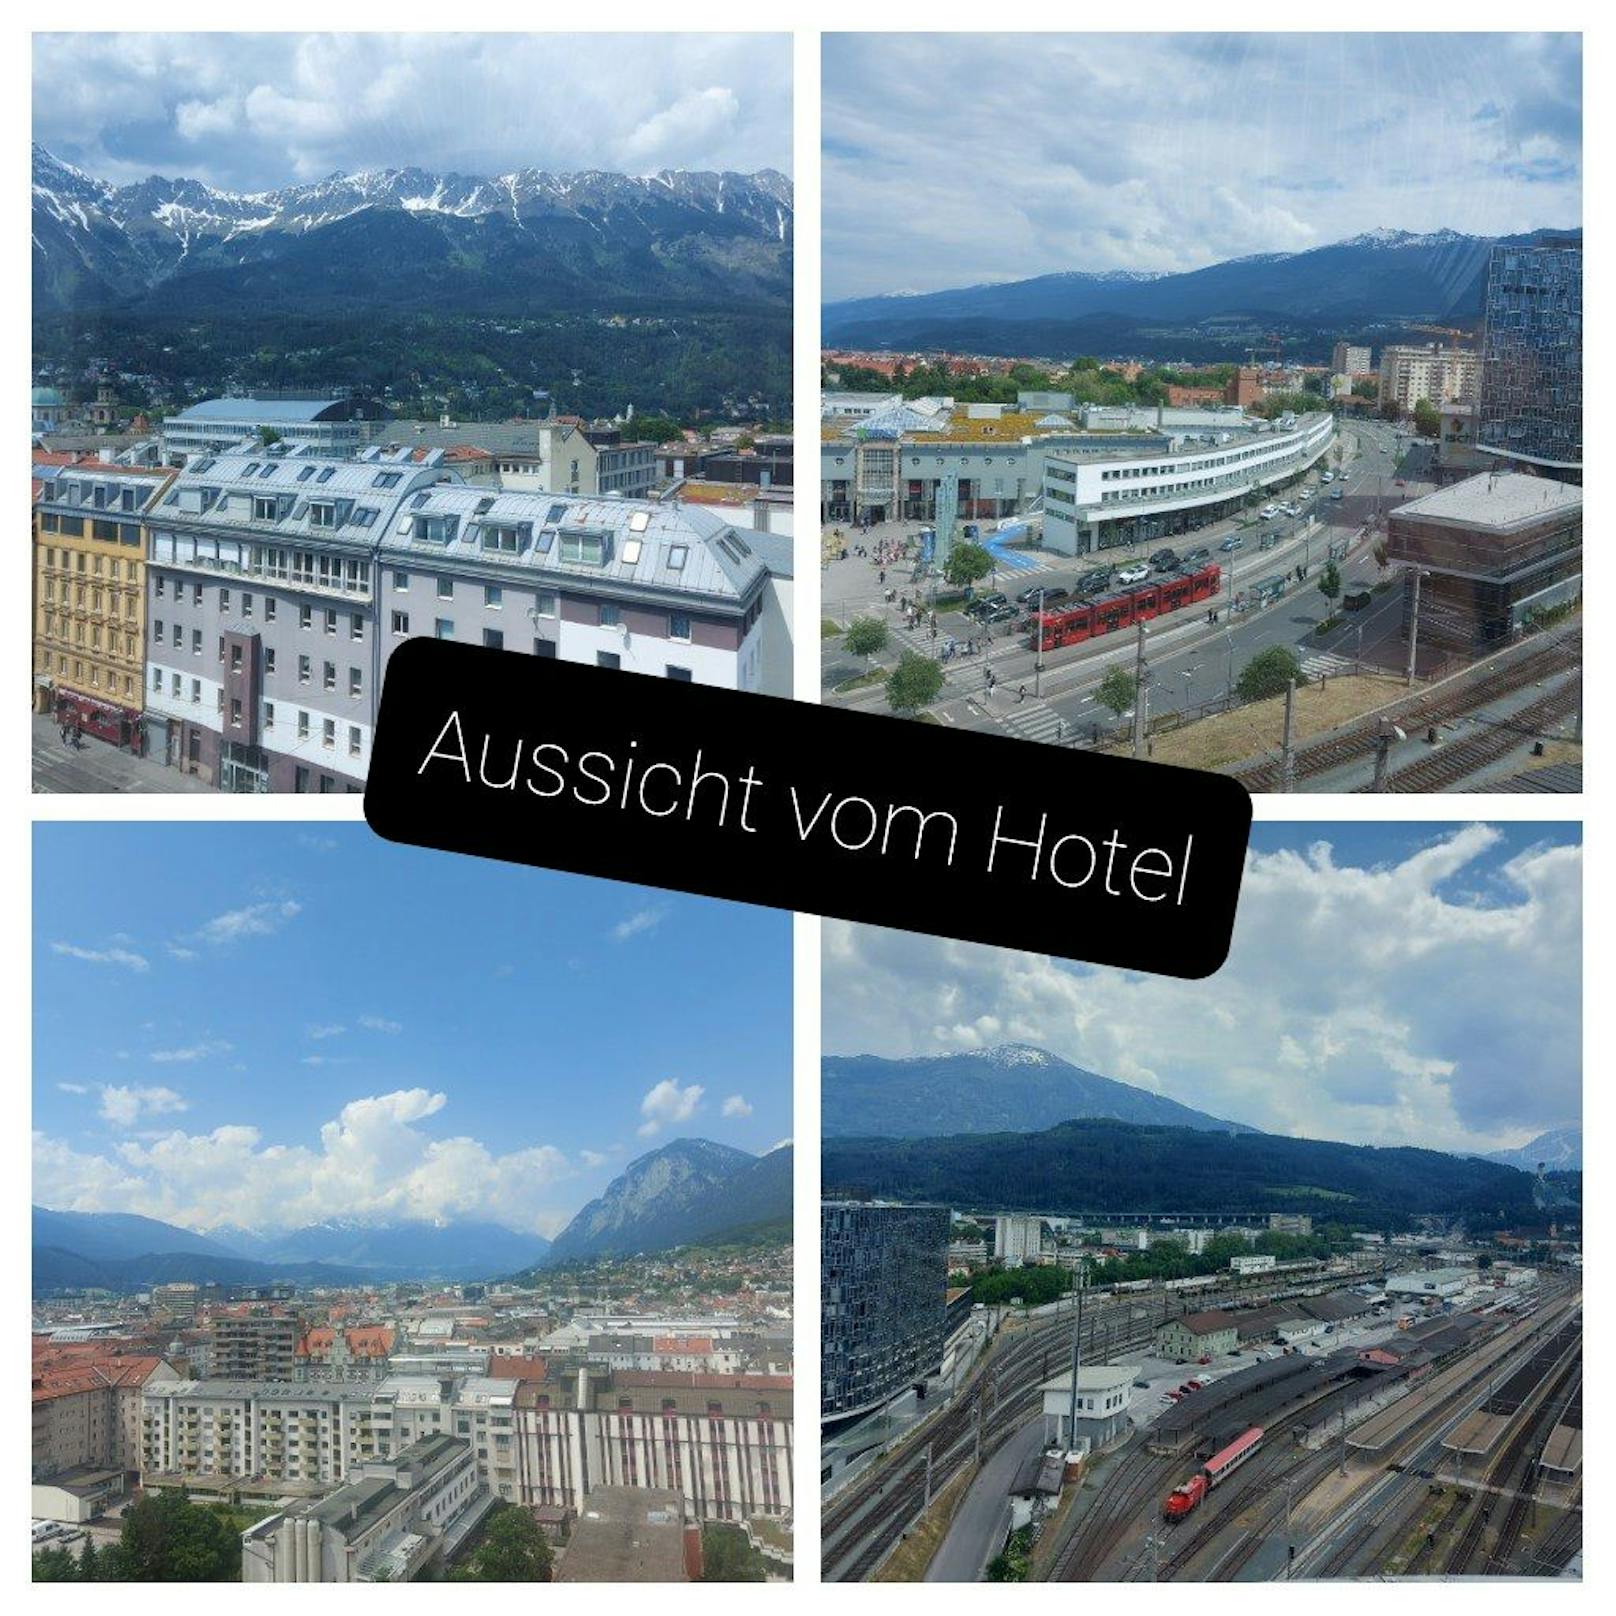 Gerhard P. und seine Frau Priska konnten drei Tage lang die zahlreichen Vorzüge der Landeshauptstadt Innsbruck genießen. Die Aussicht aus dem Hotelzimmer spricht für sich.